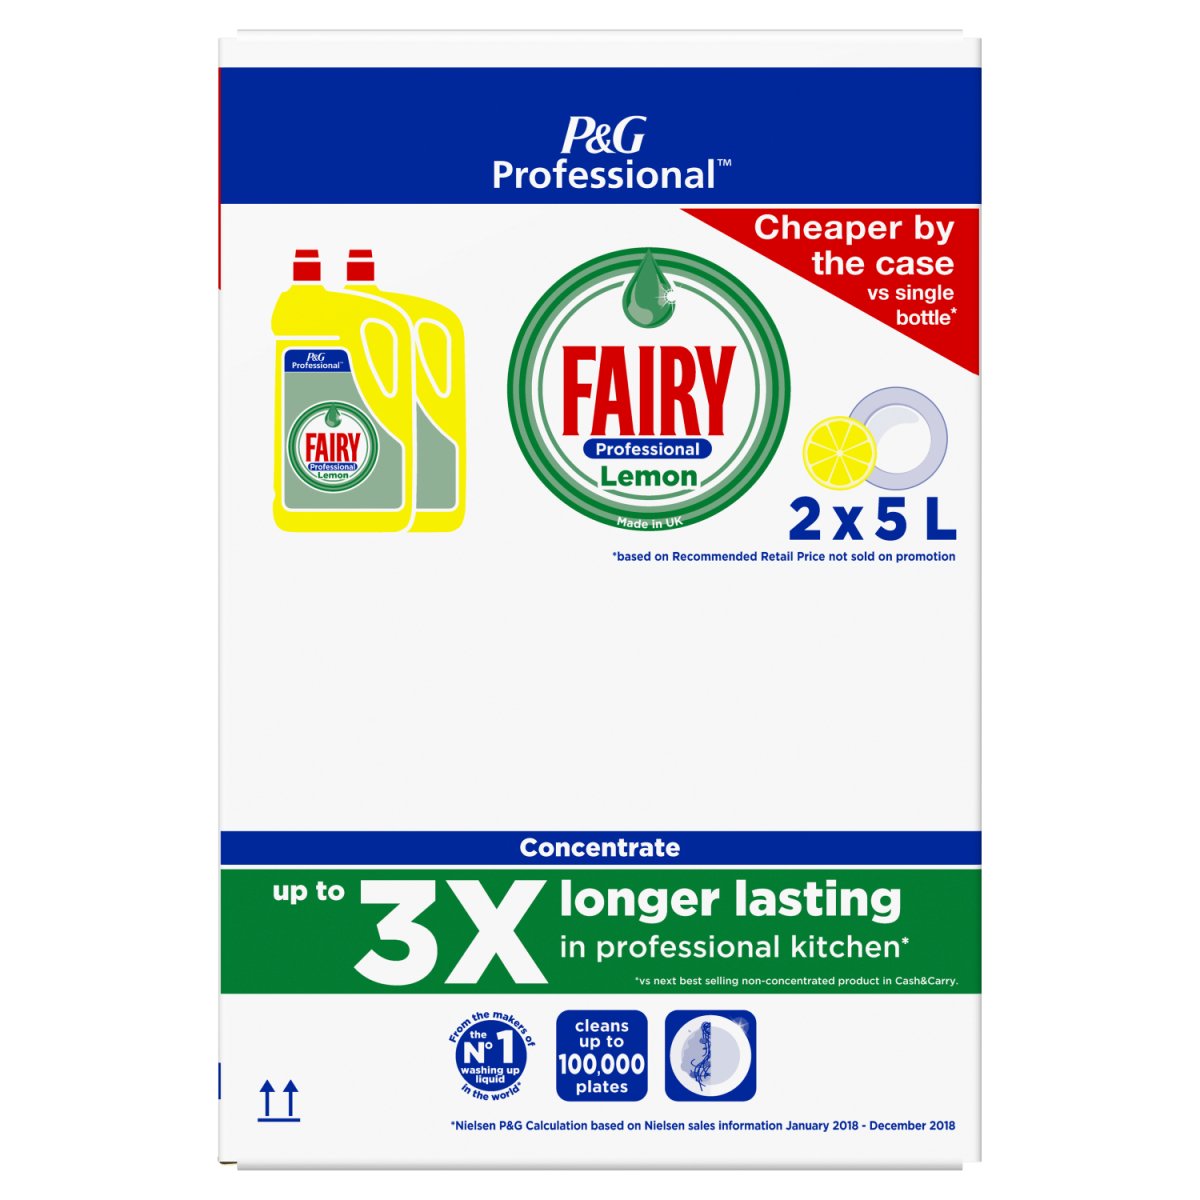 Fairy Washing Up Liquid Original - Intamarque - Wholesale 4015600414948